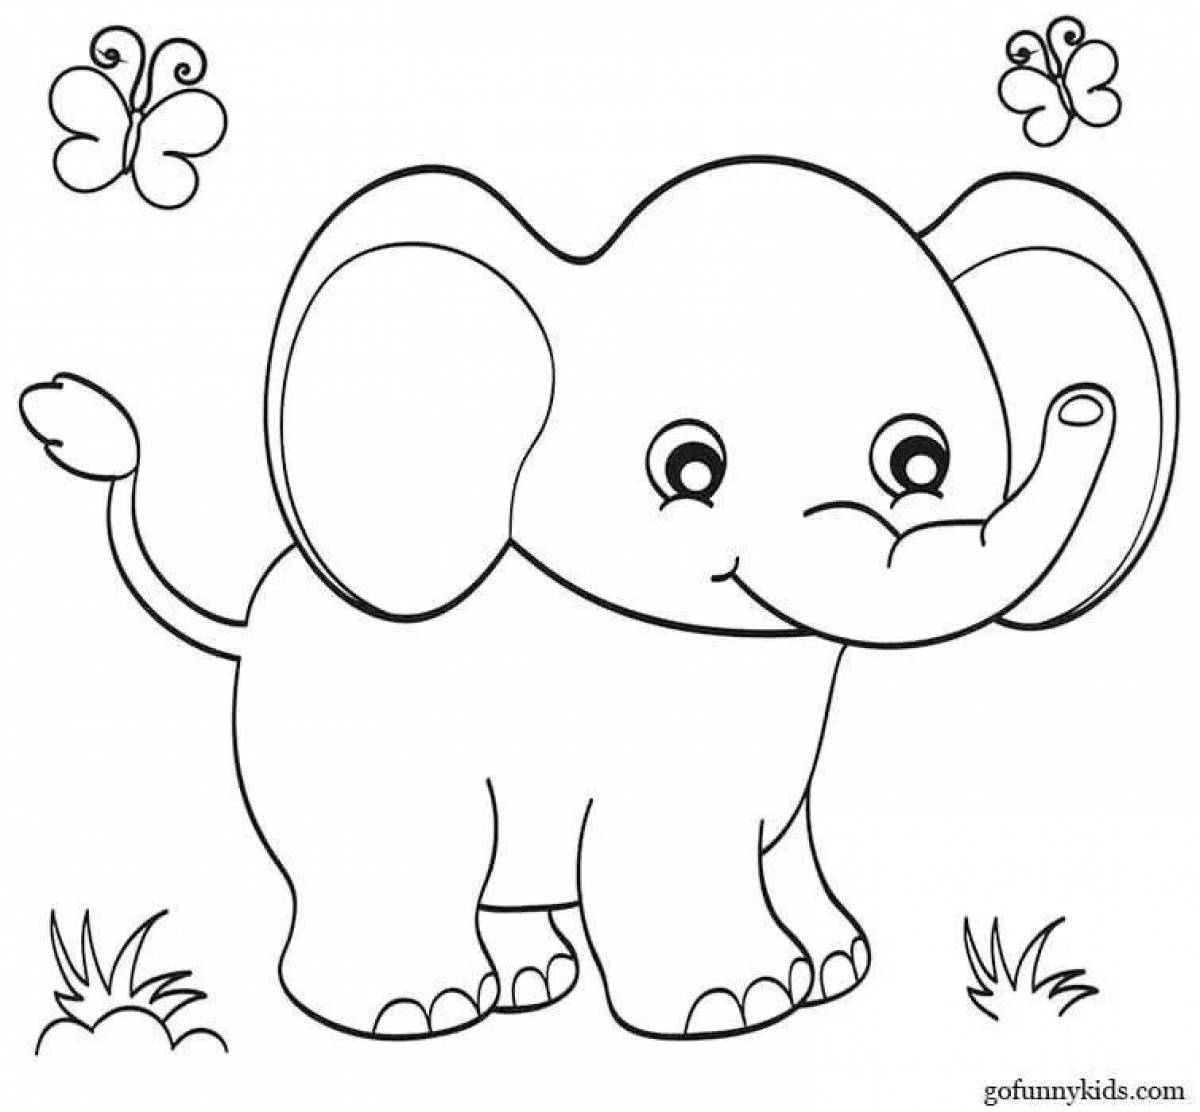 Раскраска очаровательный слон для детей 3-4 лет